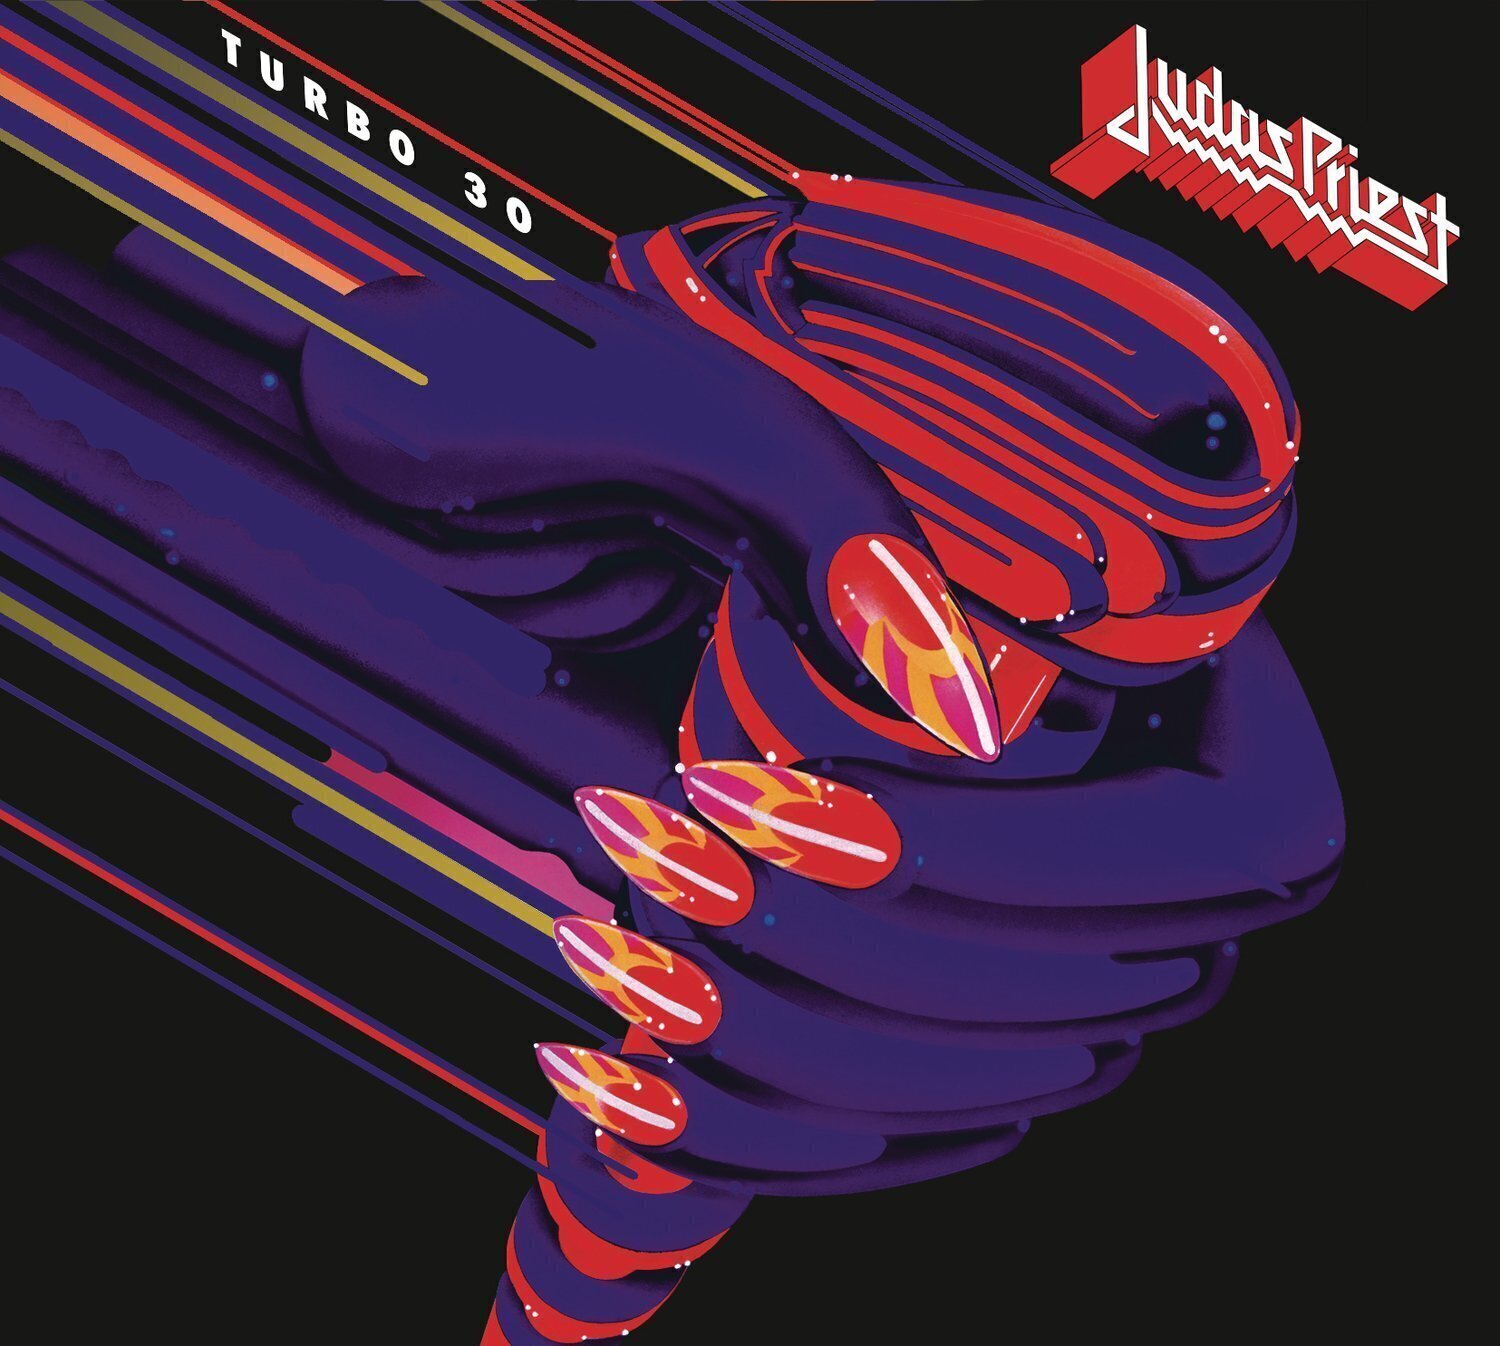 Judas Priest - Turbo 30 (Anniversary Edition) (Remastered) (3 CD) Judas Priest